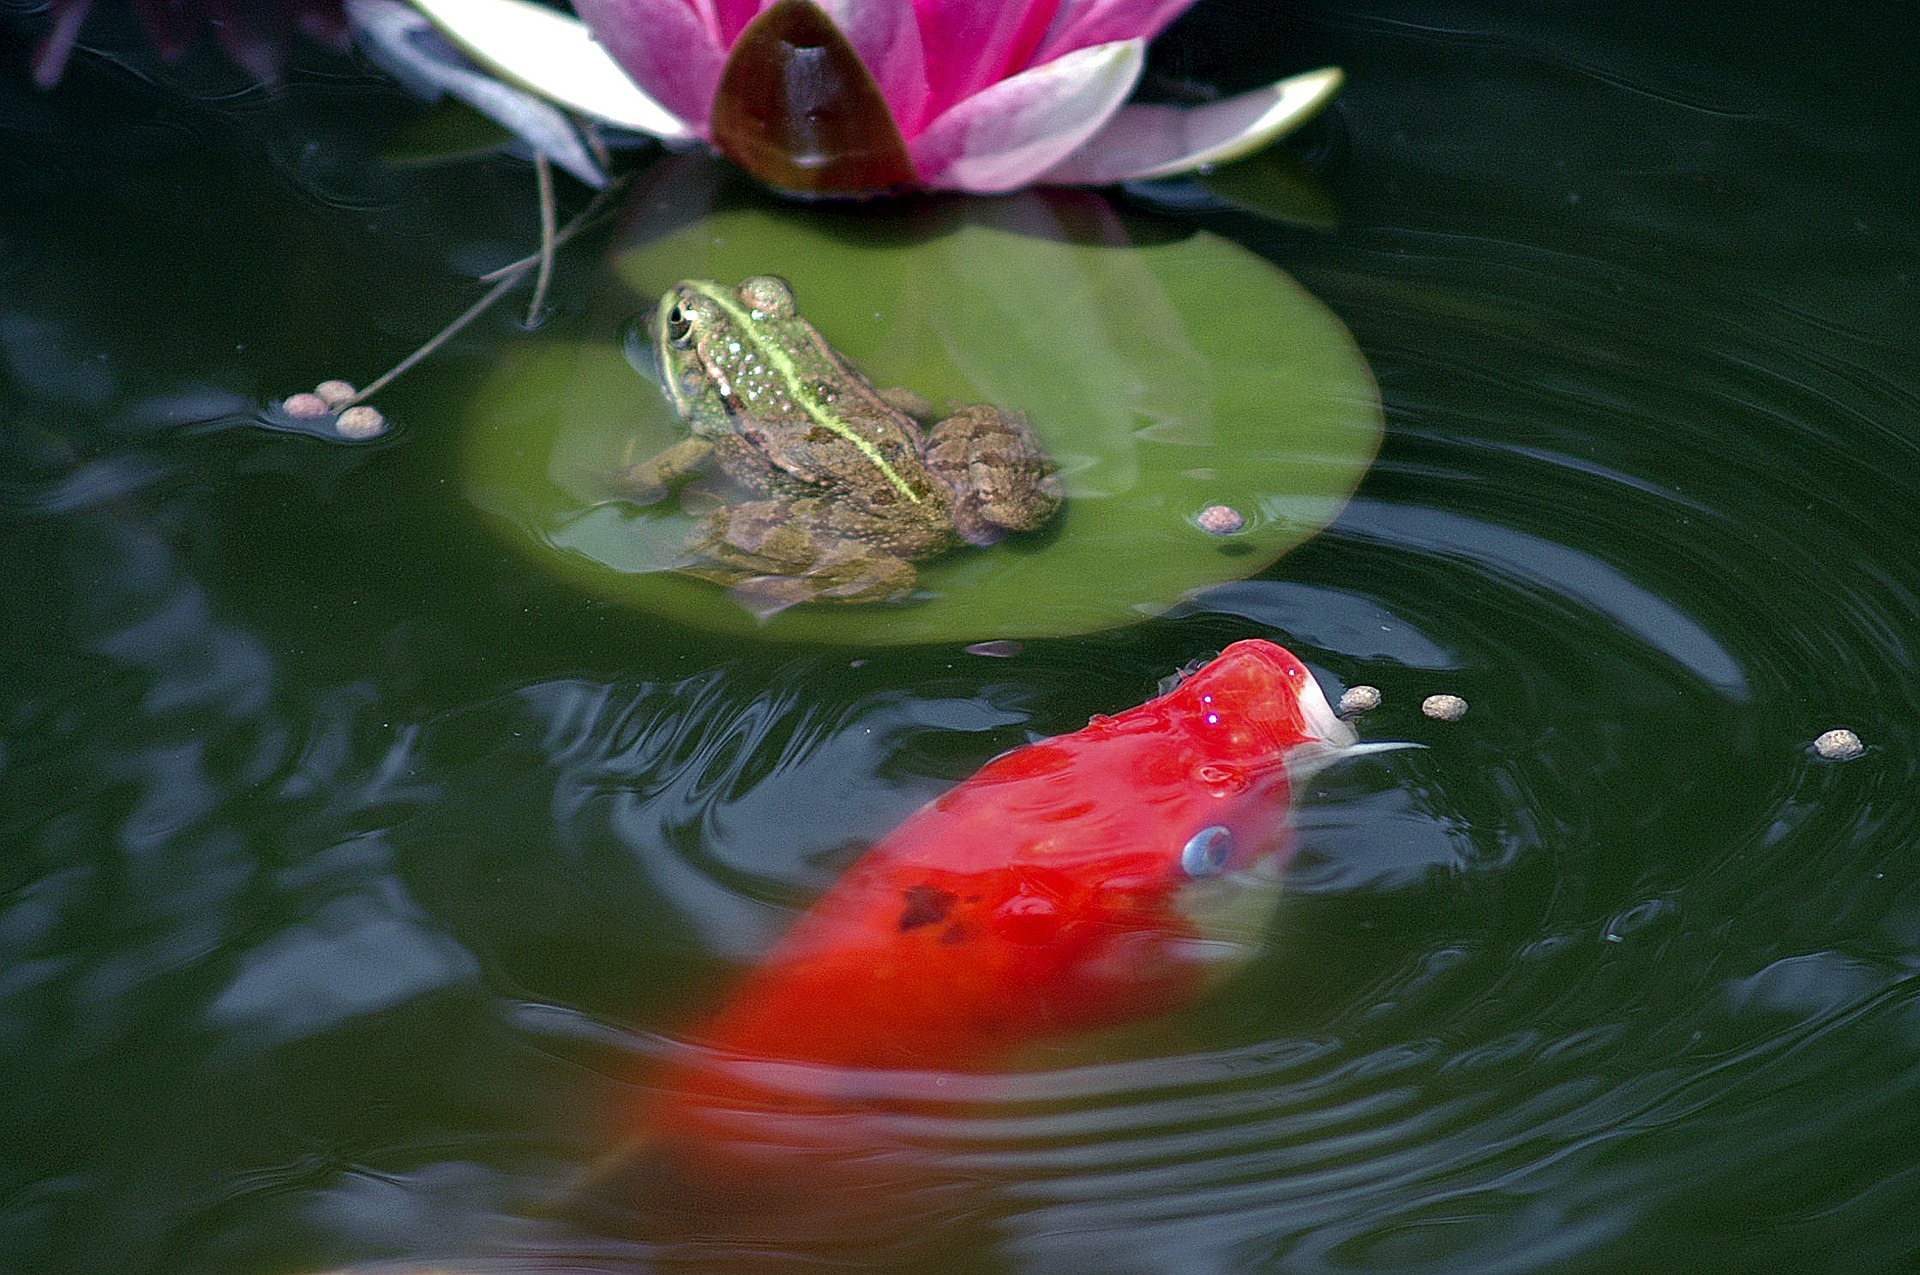 Sie können Fische in den Teich legen, z. B. Koi-Karpfen, Sonnenblumen, Rosetten und schöne Pflanzen pflanzen, z. B. gelbe Iris oder Wasserhyazinthe. Es kann auch mit Springbrunnen ausgestattet werden, die Wasser sprühen.